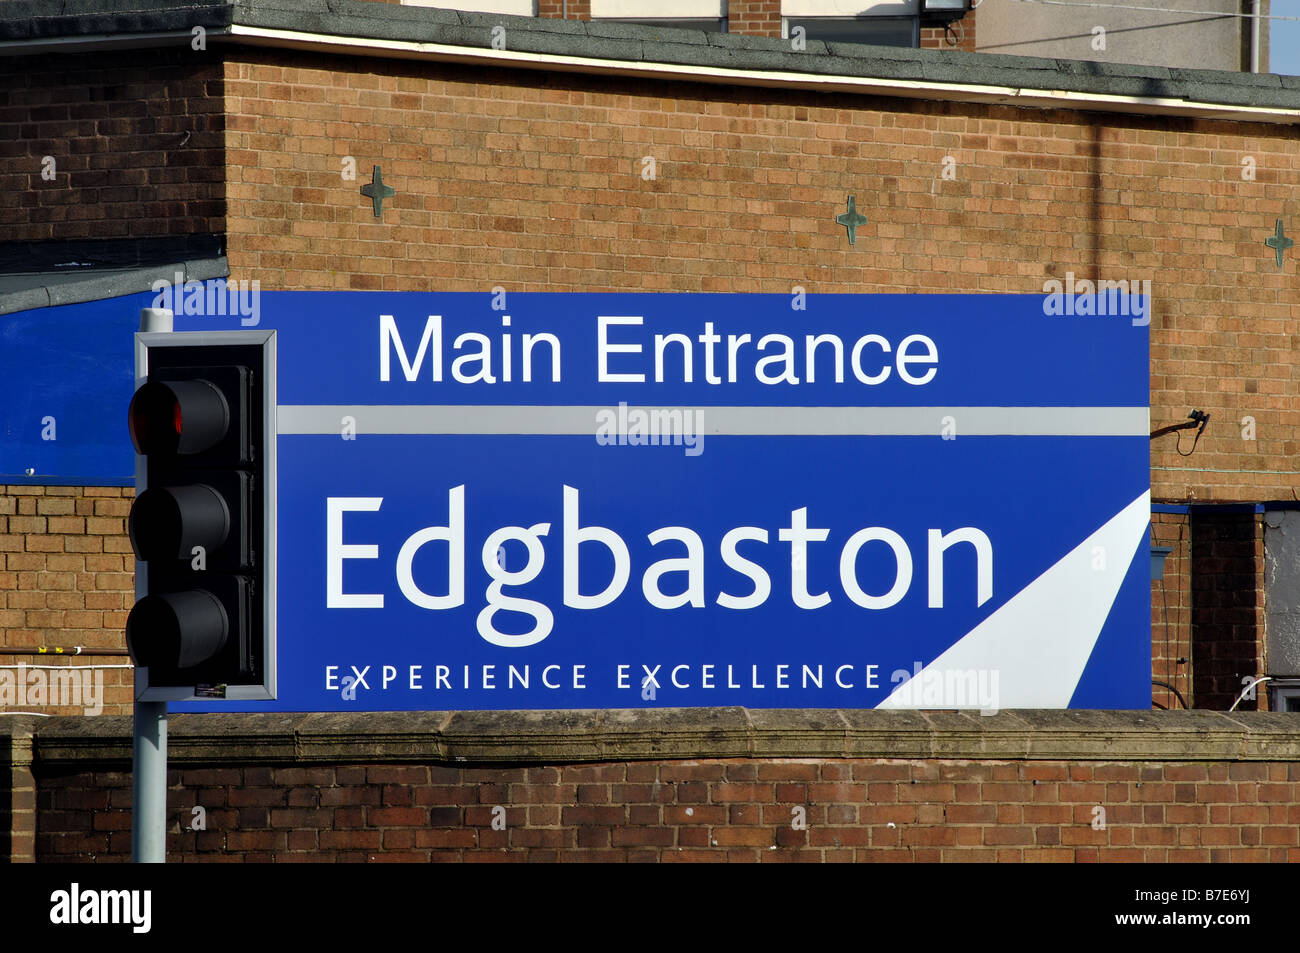 Main Entrance sign at Edgbaston Cricket Ground, Birmingham, England, UK Stock Photo